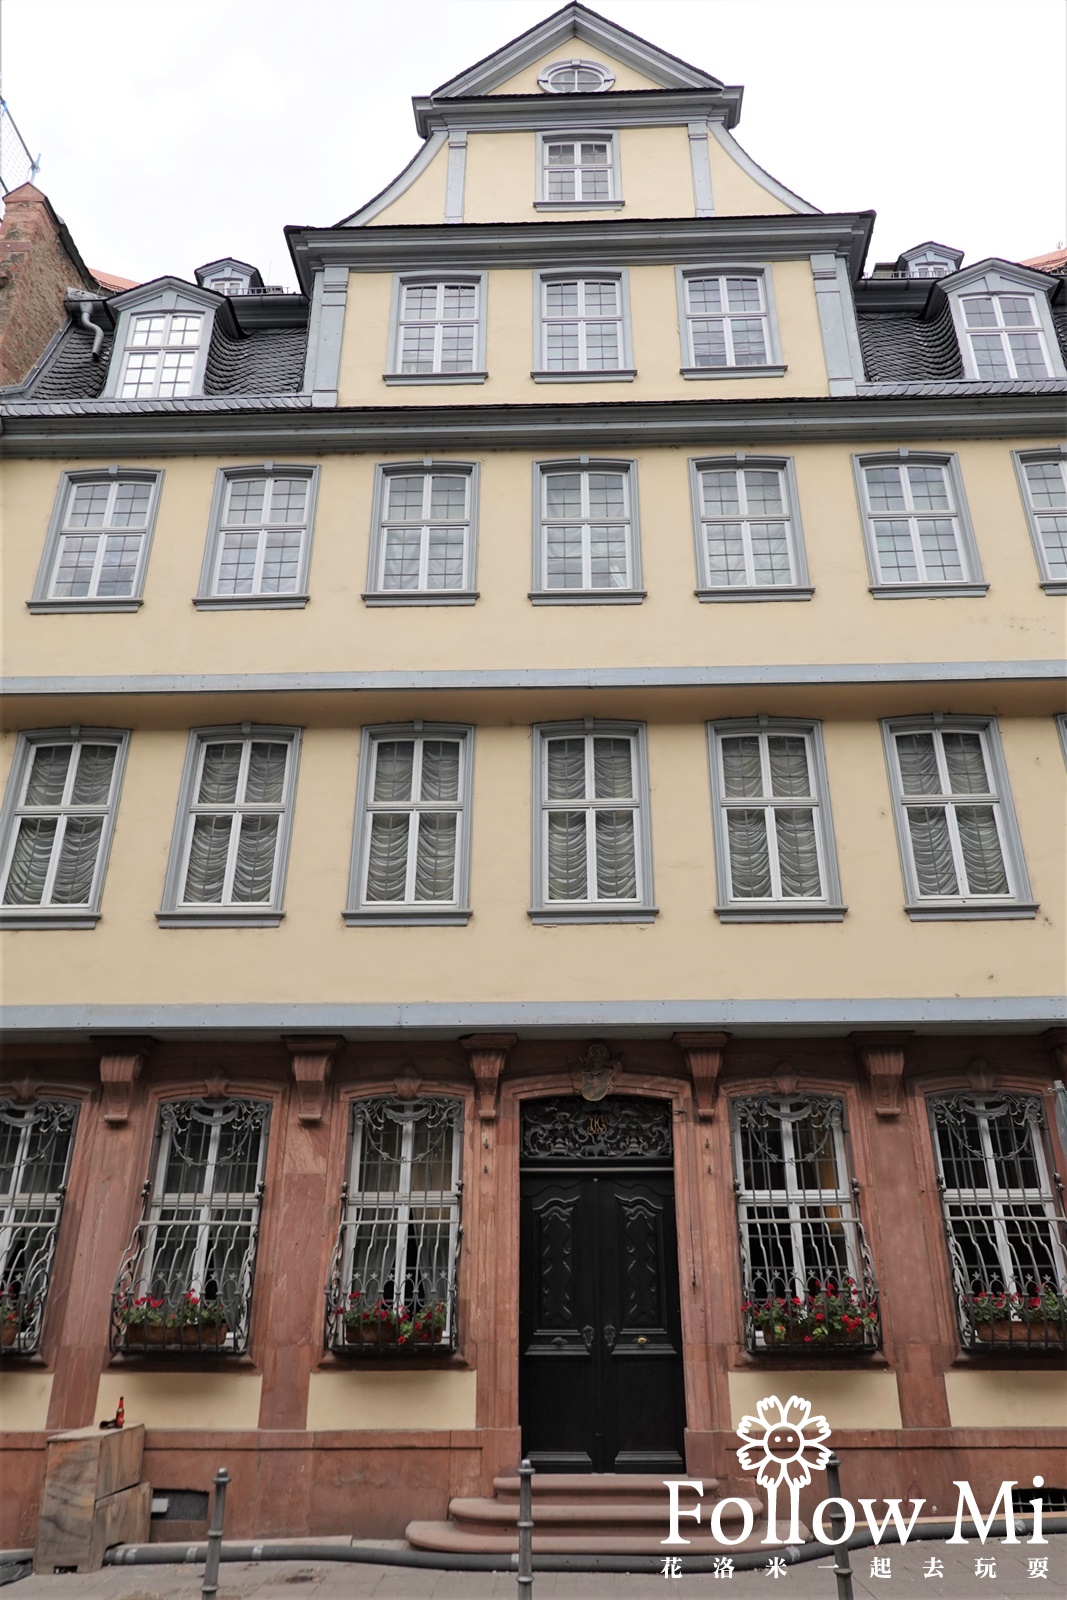 Goethe Haus,德國景點,歌德故居,法蘭克福景點,法蘭克福老城區